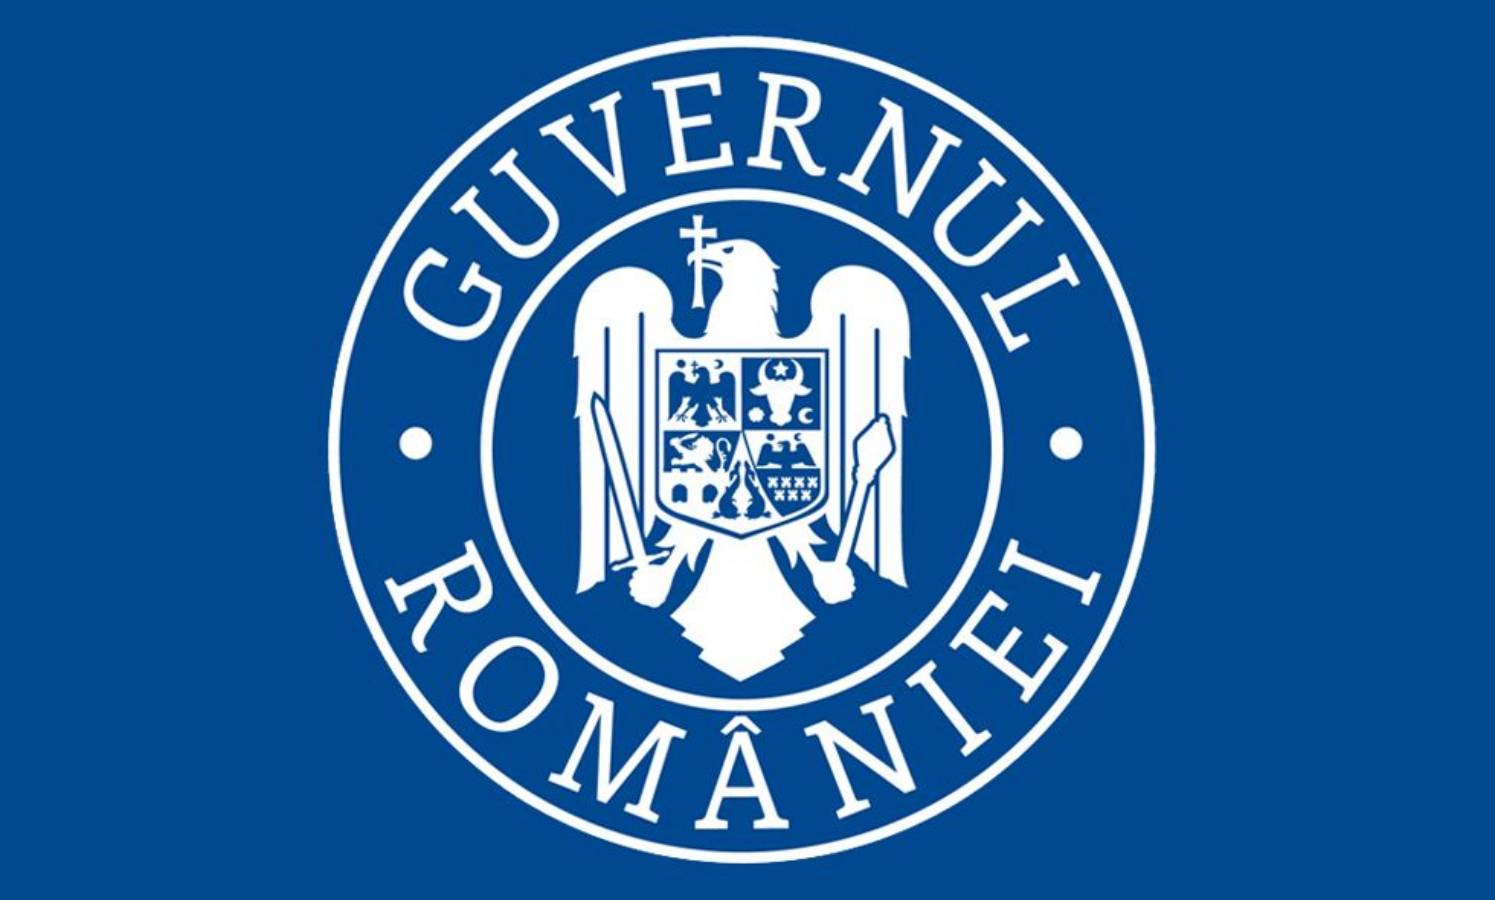 Decisione del governo rumeno che proroga lo stato di allerta fino a marzo 2021